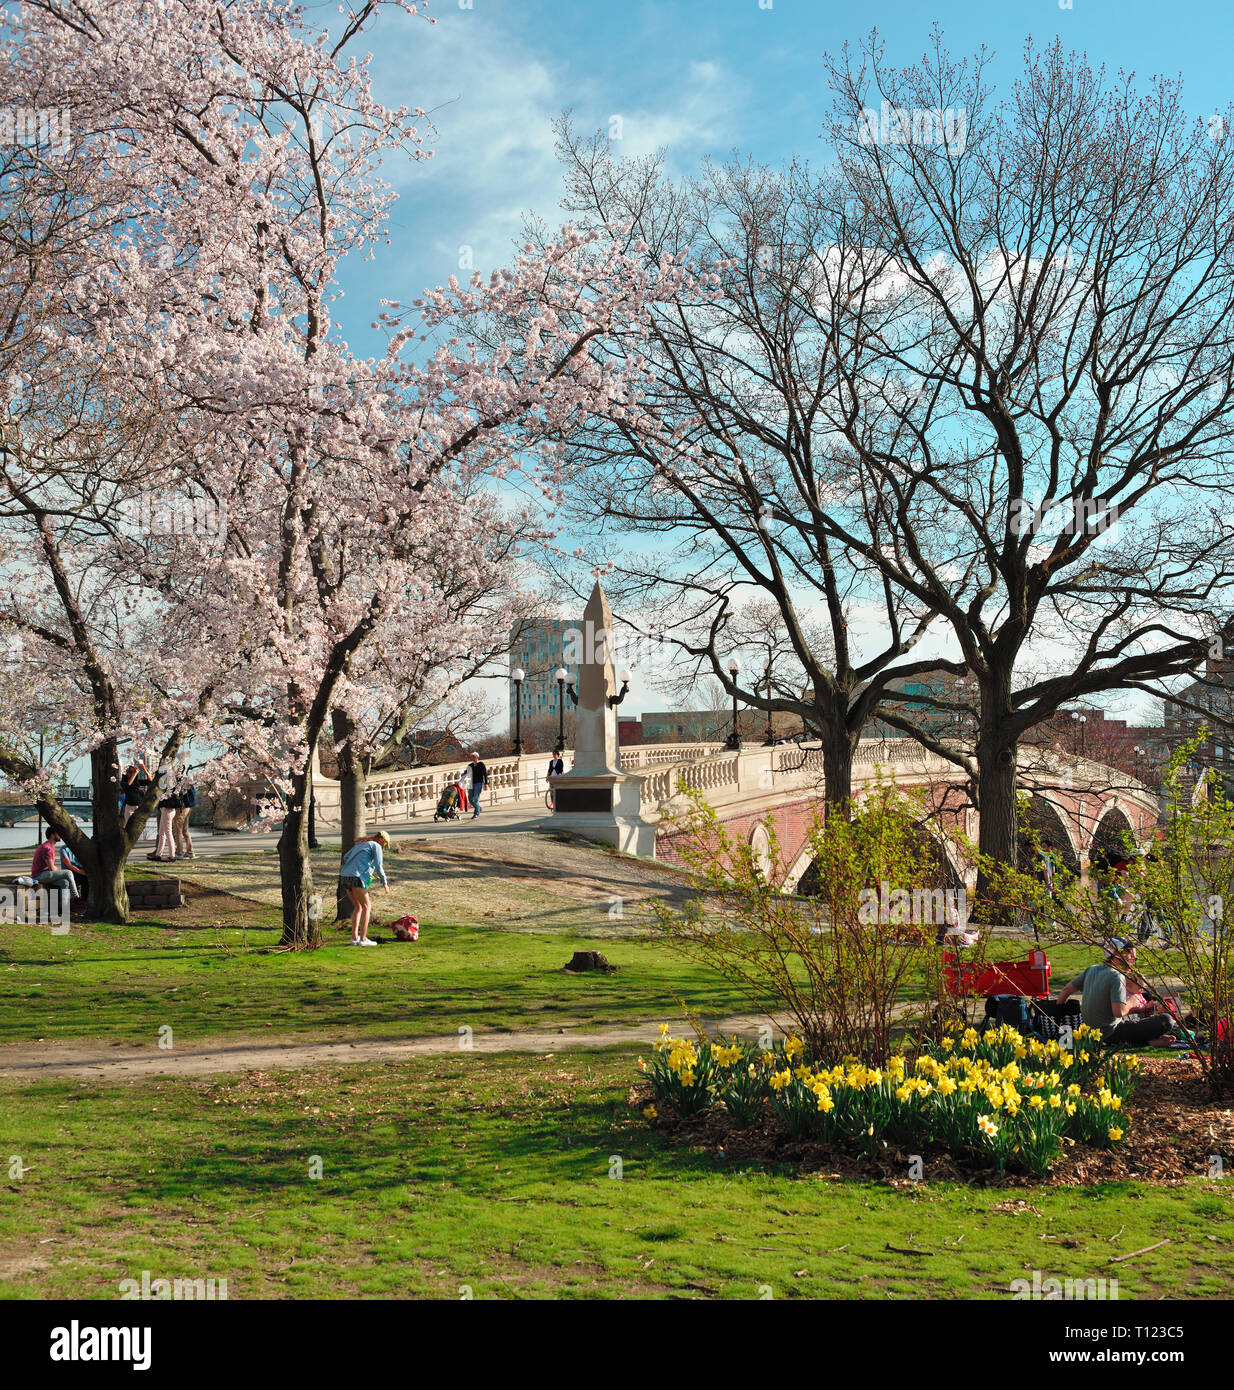 Passerelle semaines au début du printemps. Les gens qui sortent pour profiter du beau temps entre les fleurs de cerisier et de jonquilles sur Charles River Bank. Cambridge, MA Banque D'Images